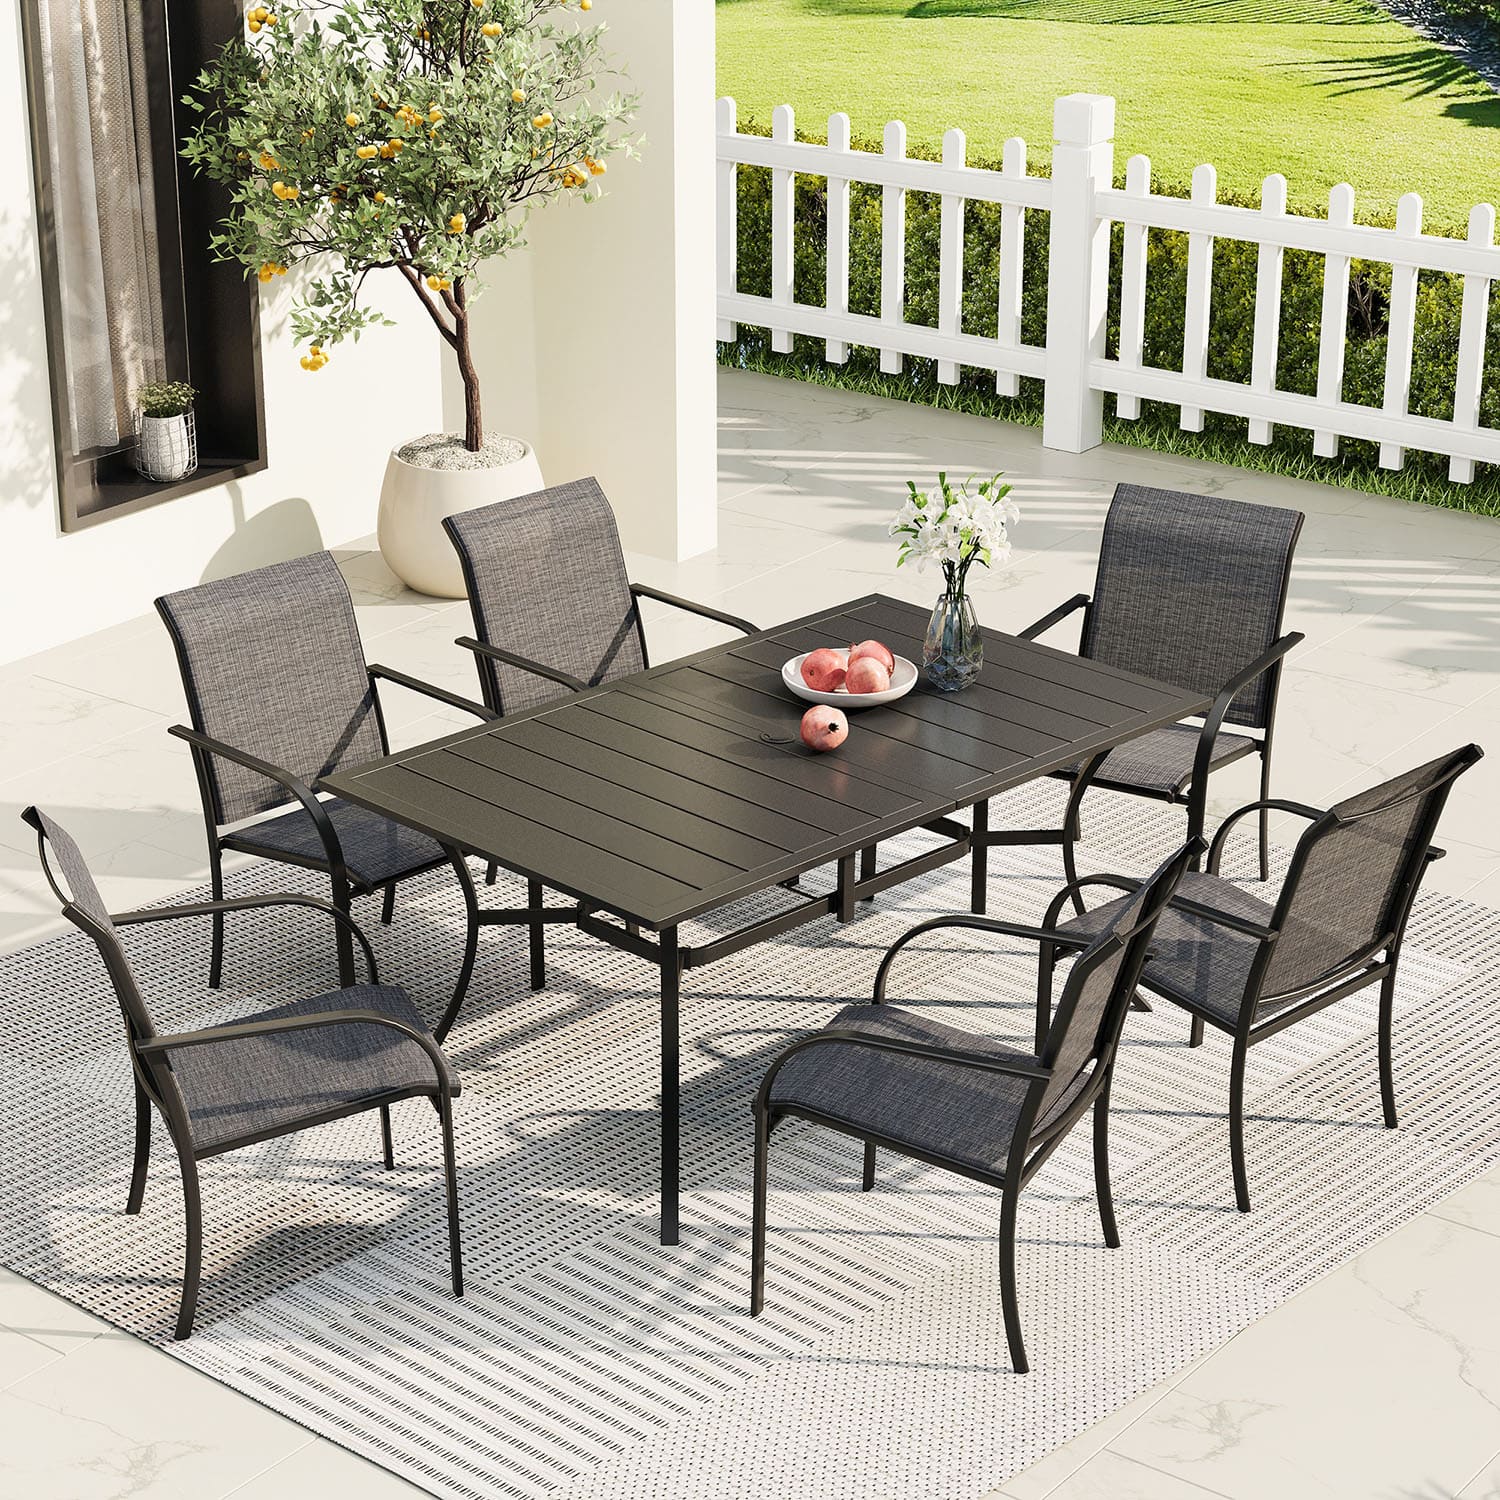 Vicllax Juego de comedor de exterior de 7 piezas con mesa rectangular de metal y sillas con reposabrazos de textileno